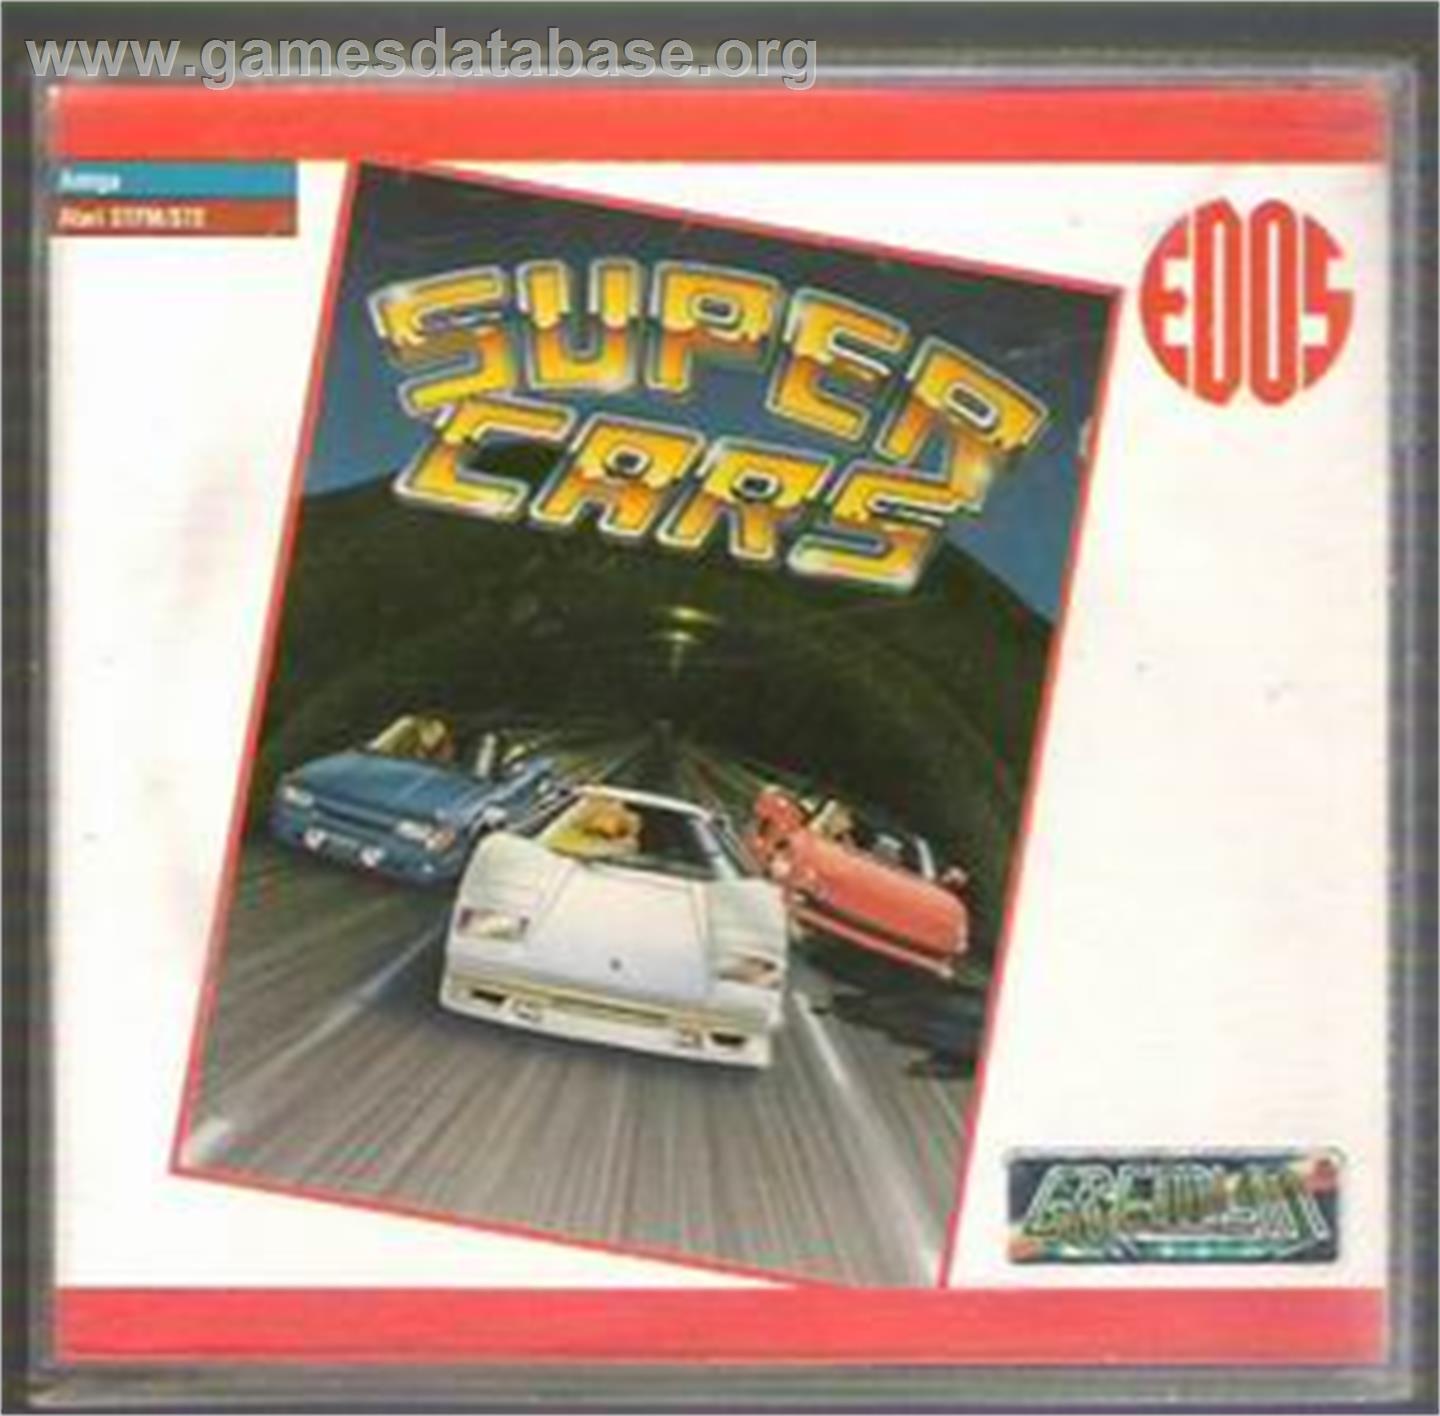 Super Heroes - Atari ST - Artwork - Box